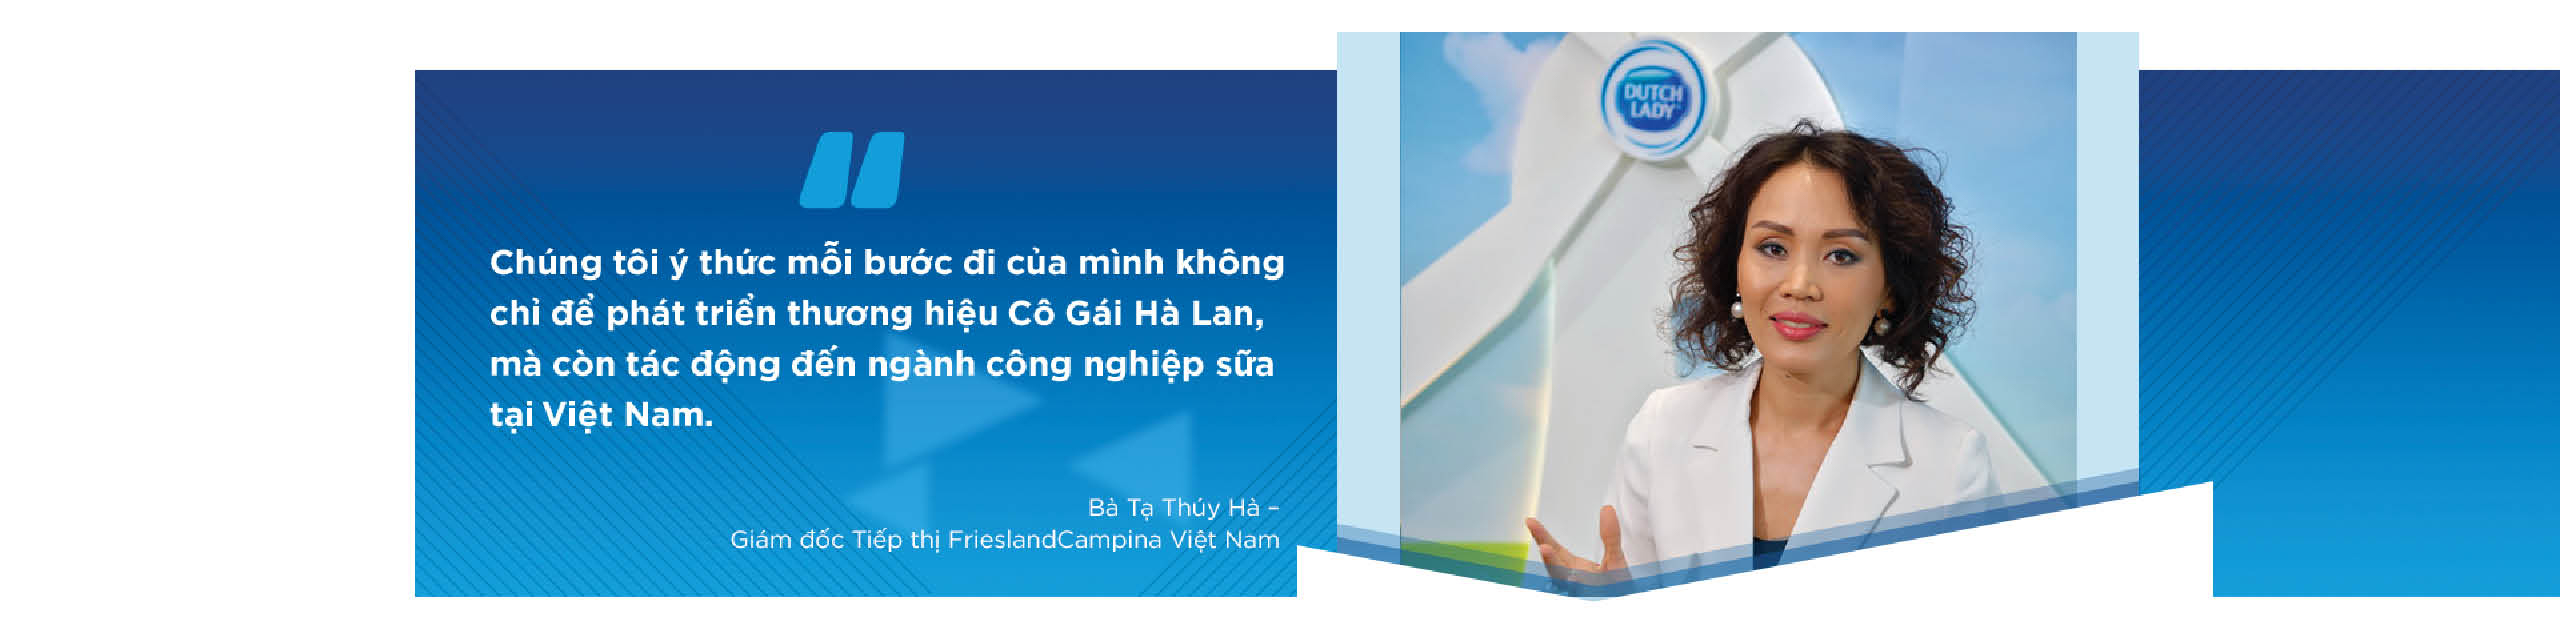 Giám đốc tiếp thị FrieslandCampina Việt Nam: Thành công vì thấu hiểu khách hàng, sản phẩm vượt trội - Ảnh 5.